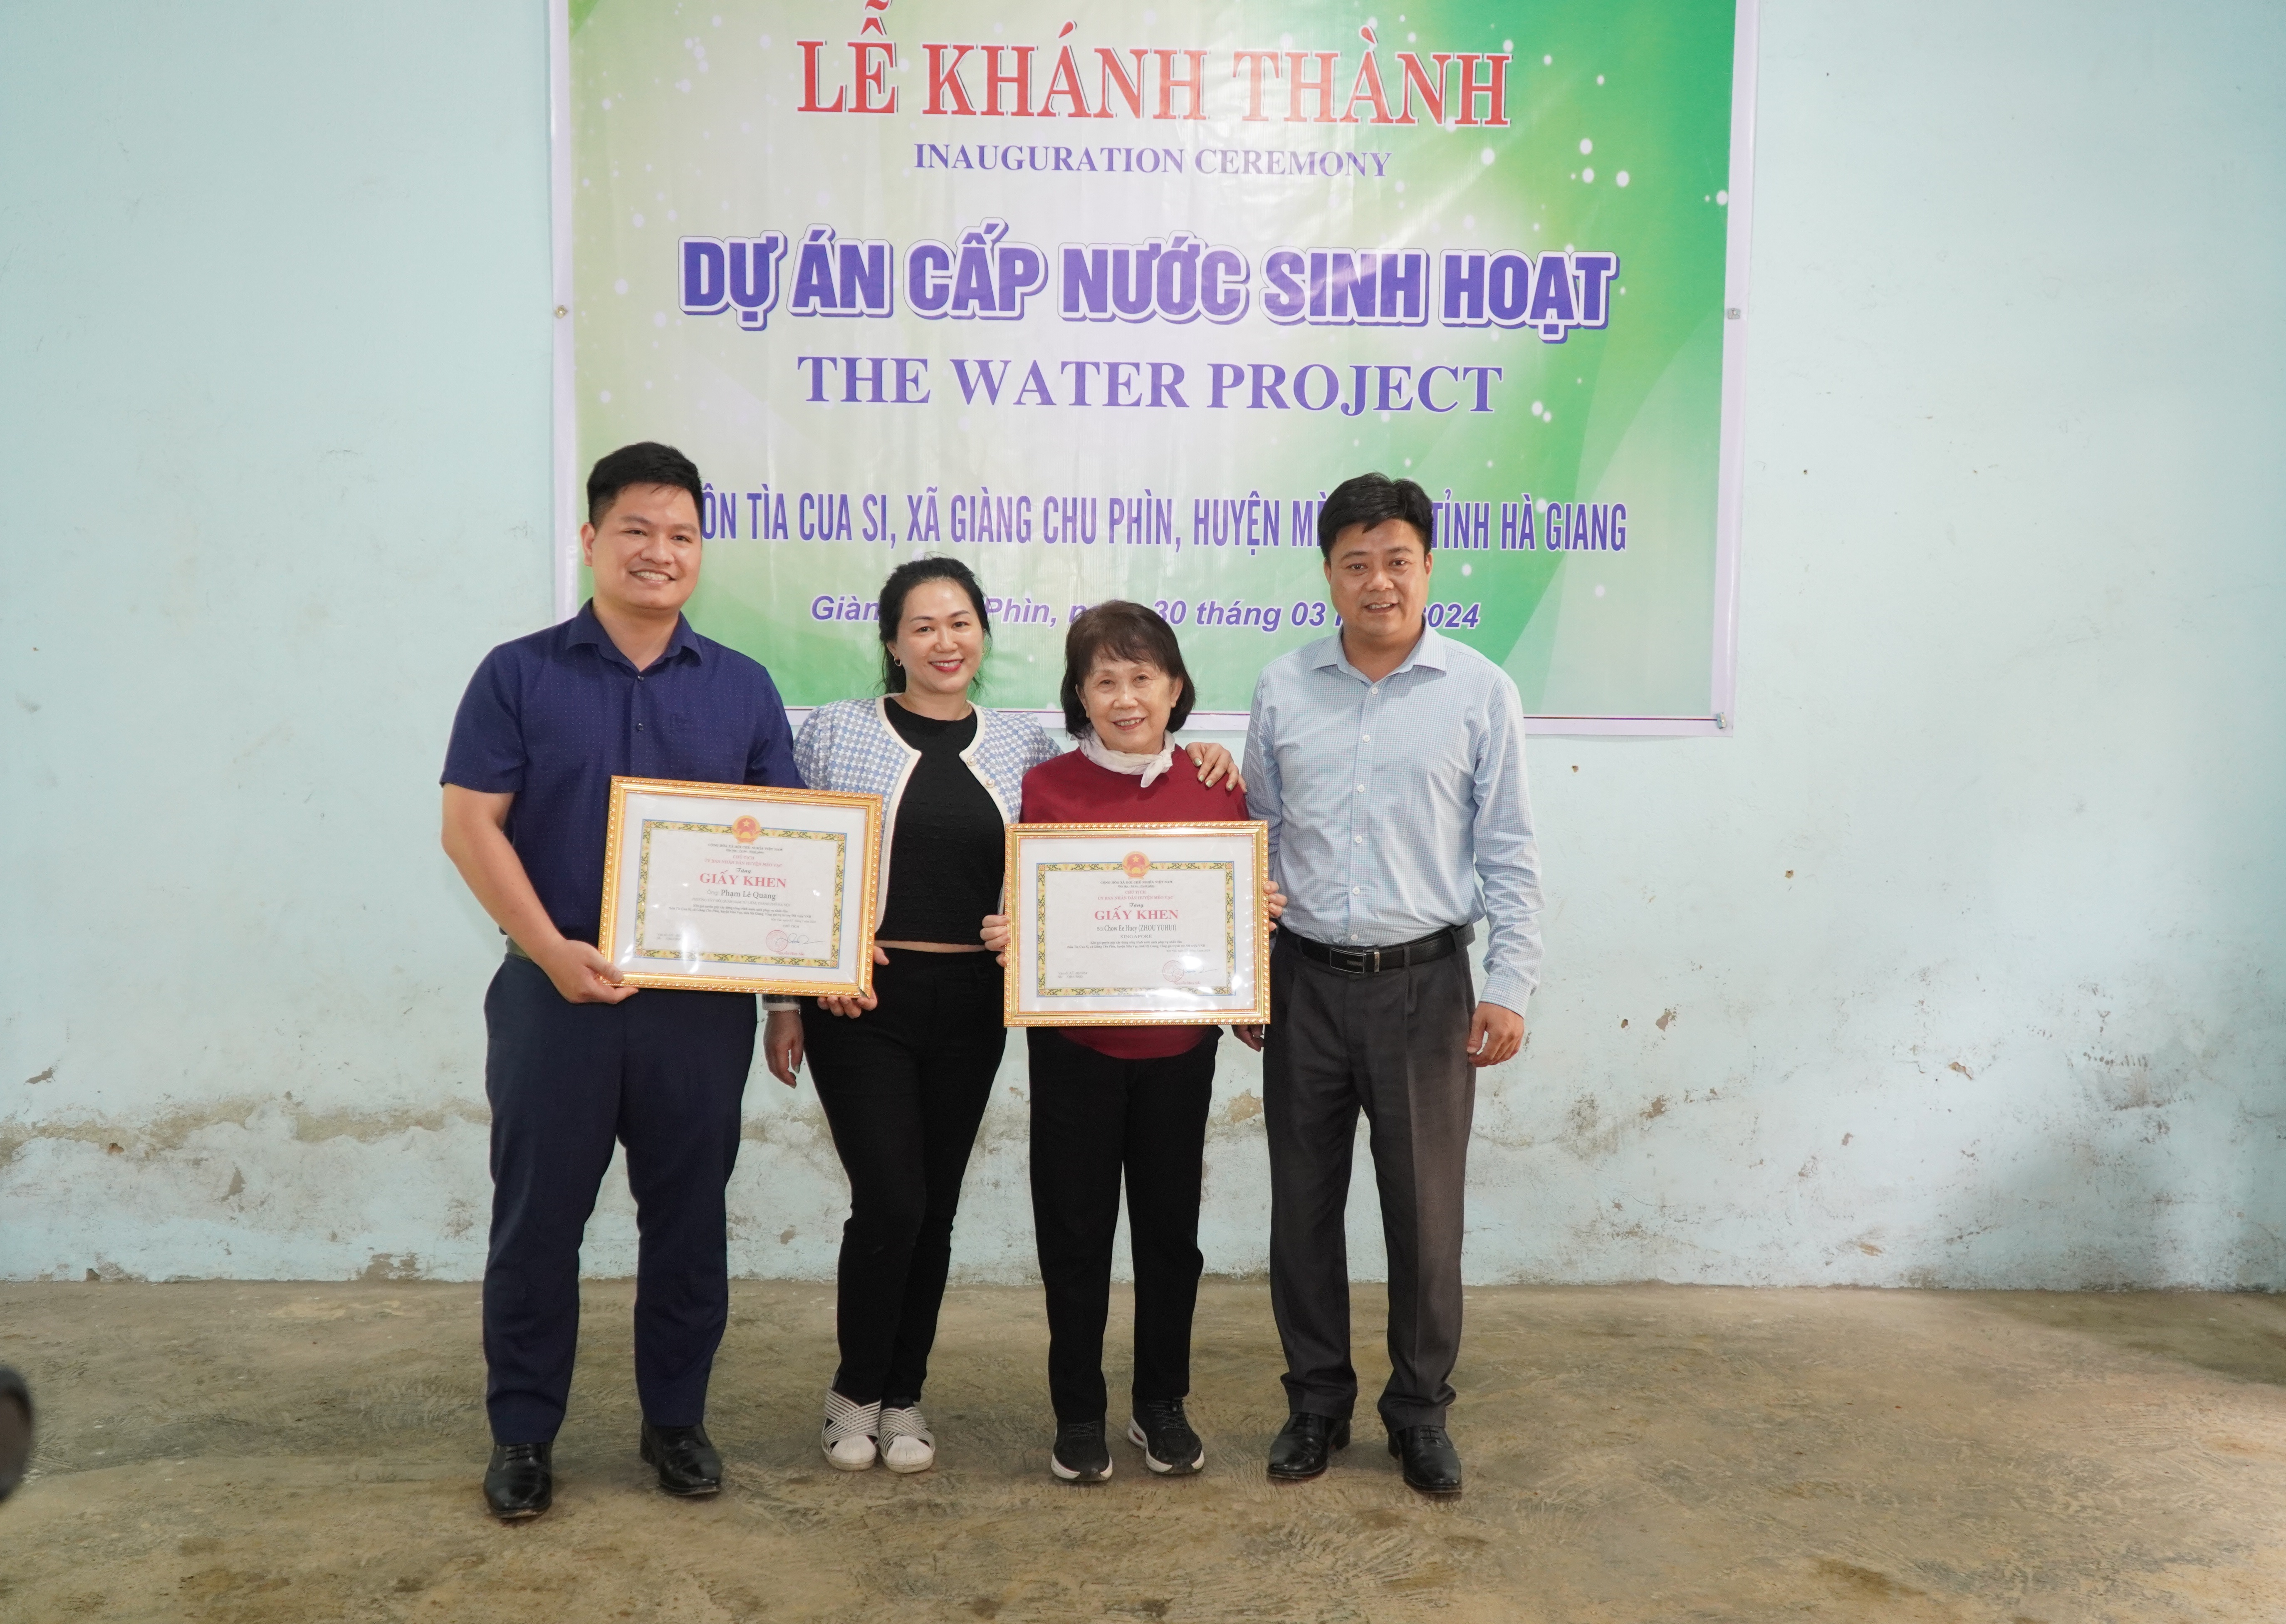 Khánh thành công trình cấp nước sinh hoạt thôn Tìa Cua Si , xã Giàng Chu Phìn